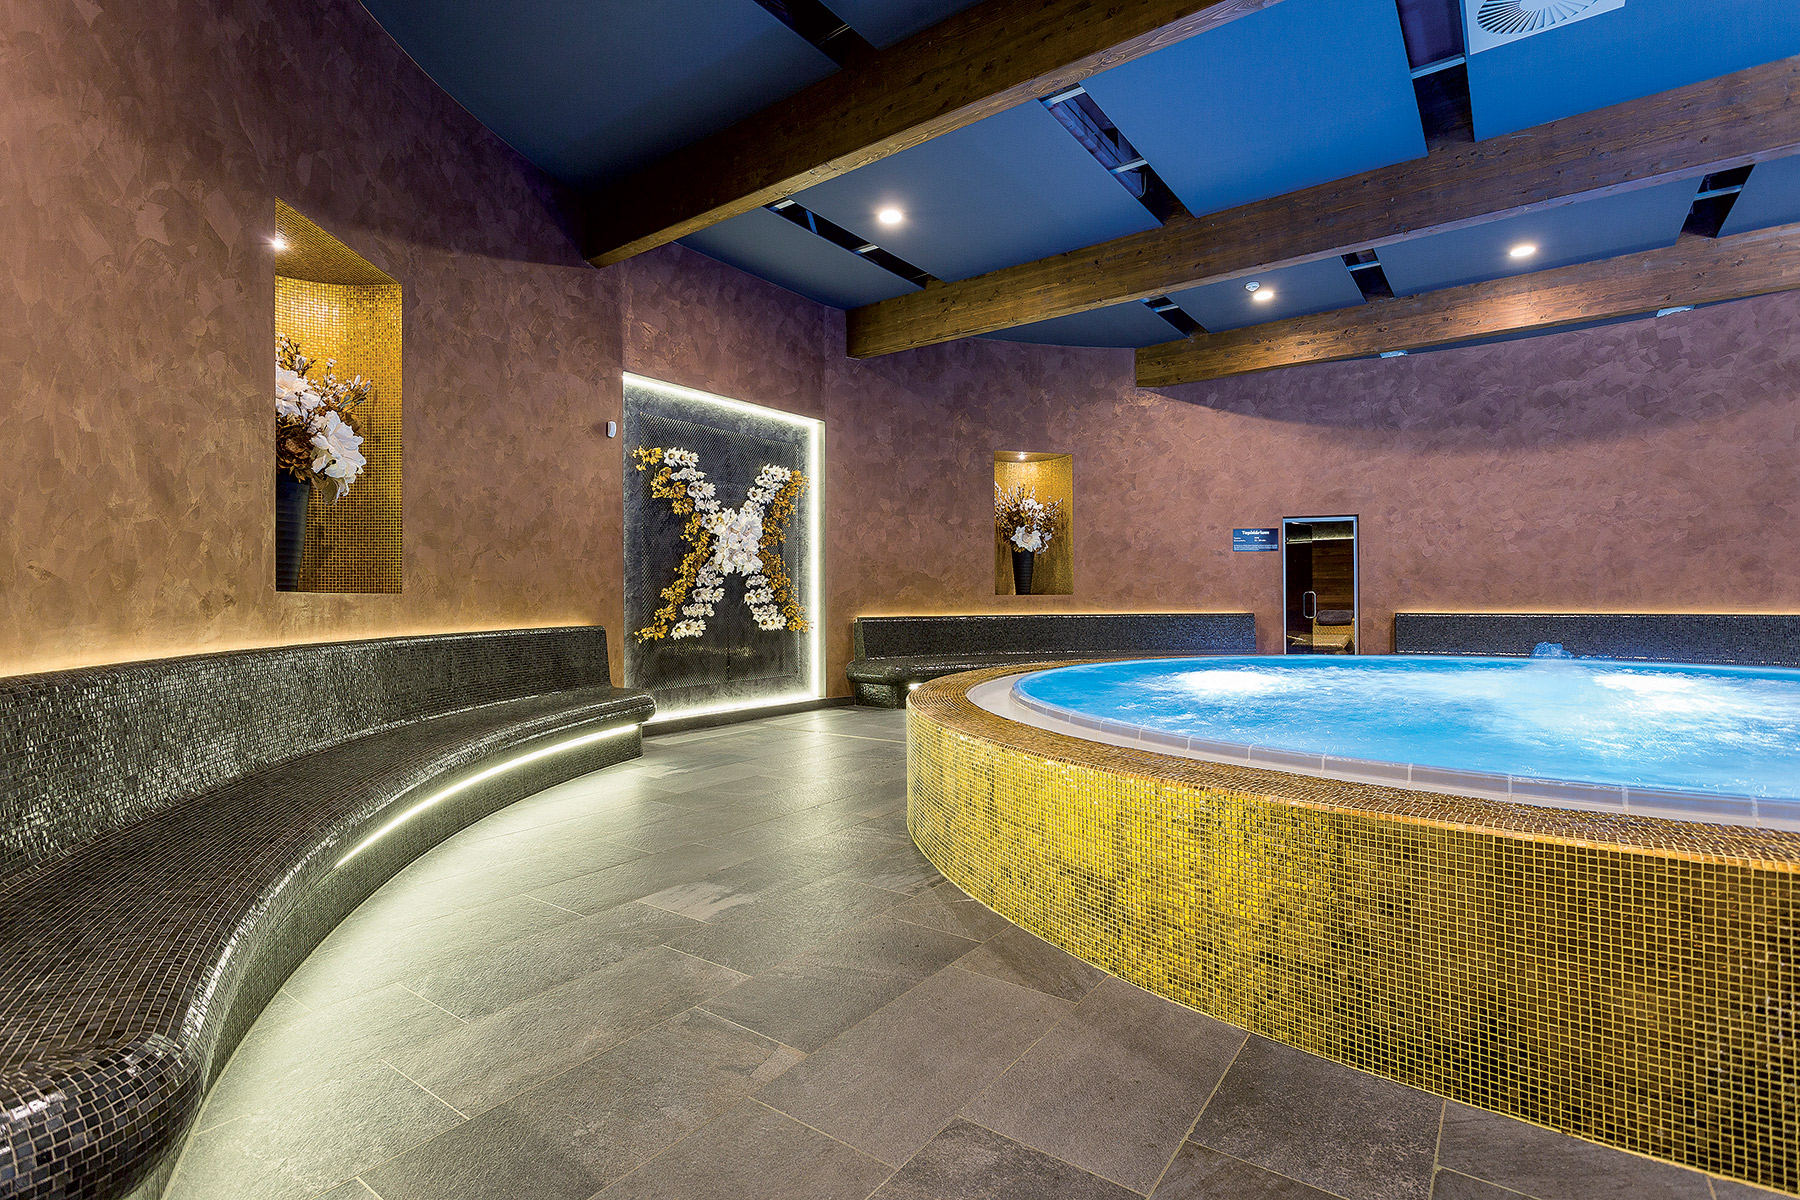 Povrchová úprava stien wellness centra, ktoré ponúka relax v 7 saunách a jacuzzi, navodzuje pokojnú atmosféru. V ústrednej časti s vírivkou sa použil štuk so zlatým prachom Aureum, ktorý kombinuje vzhľad zlata a mramoru.